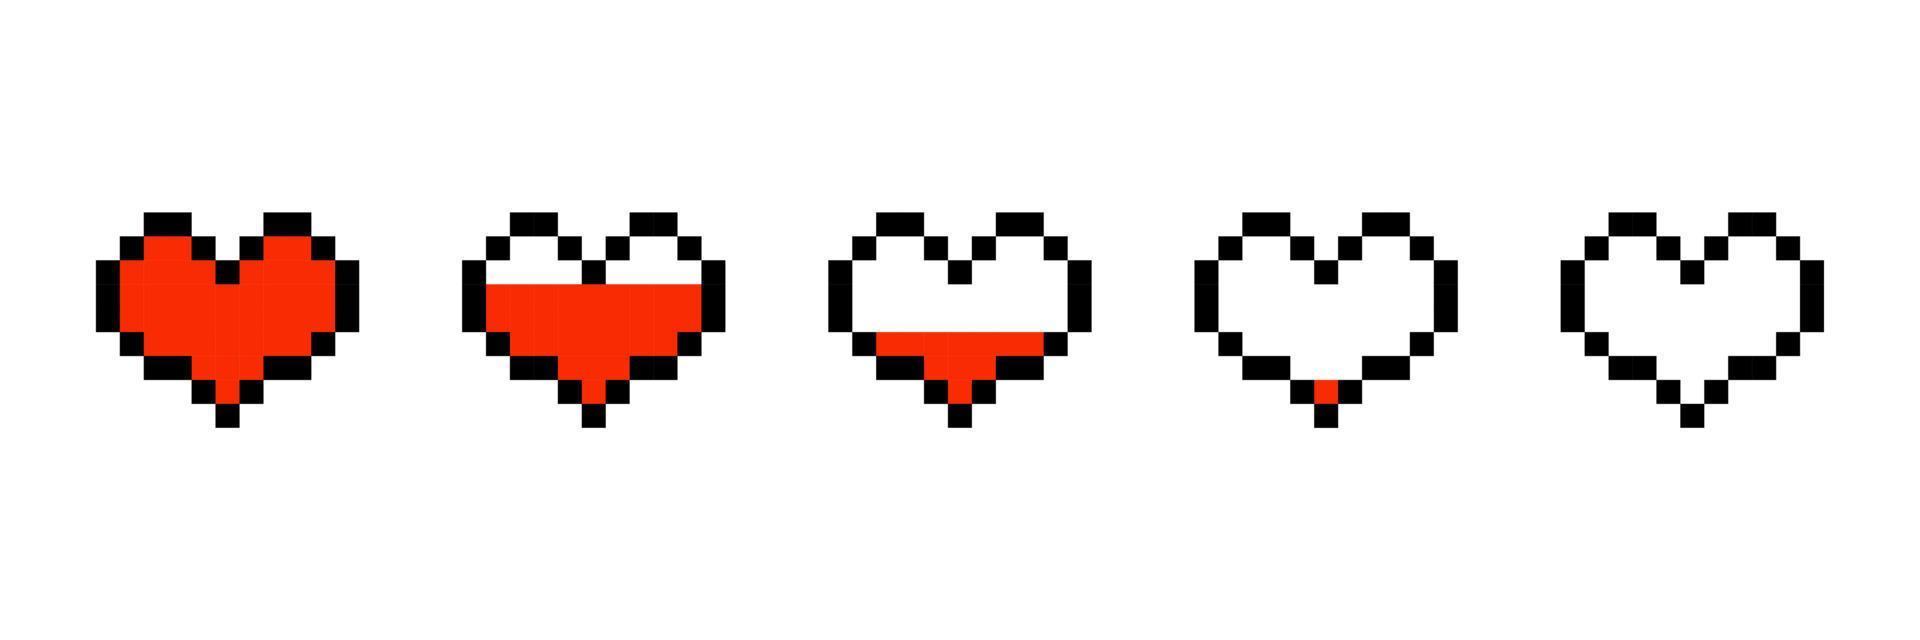 píxel juego vida bar, píxel corazón, juego de azar controlador, píxel Arte vida bar para píxel juego vector